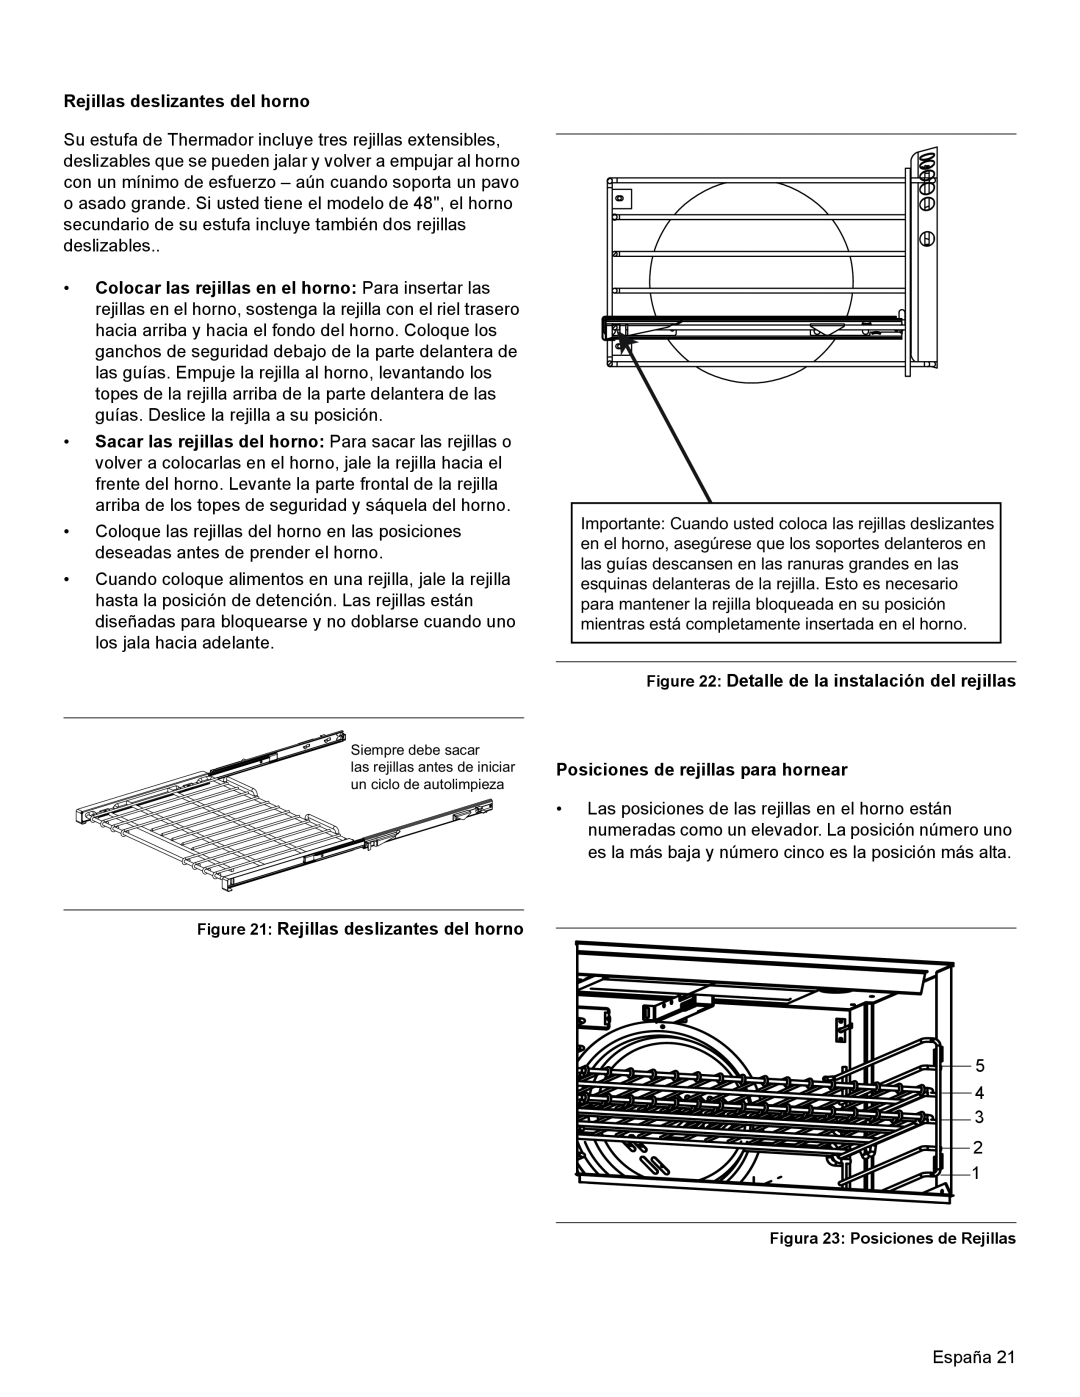 Thermador PRL36, PRG30, PRL30 manual Rejillas deslizantes del horno 